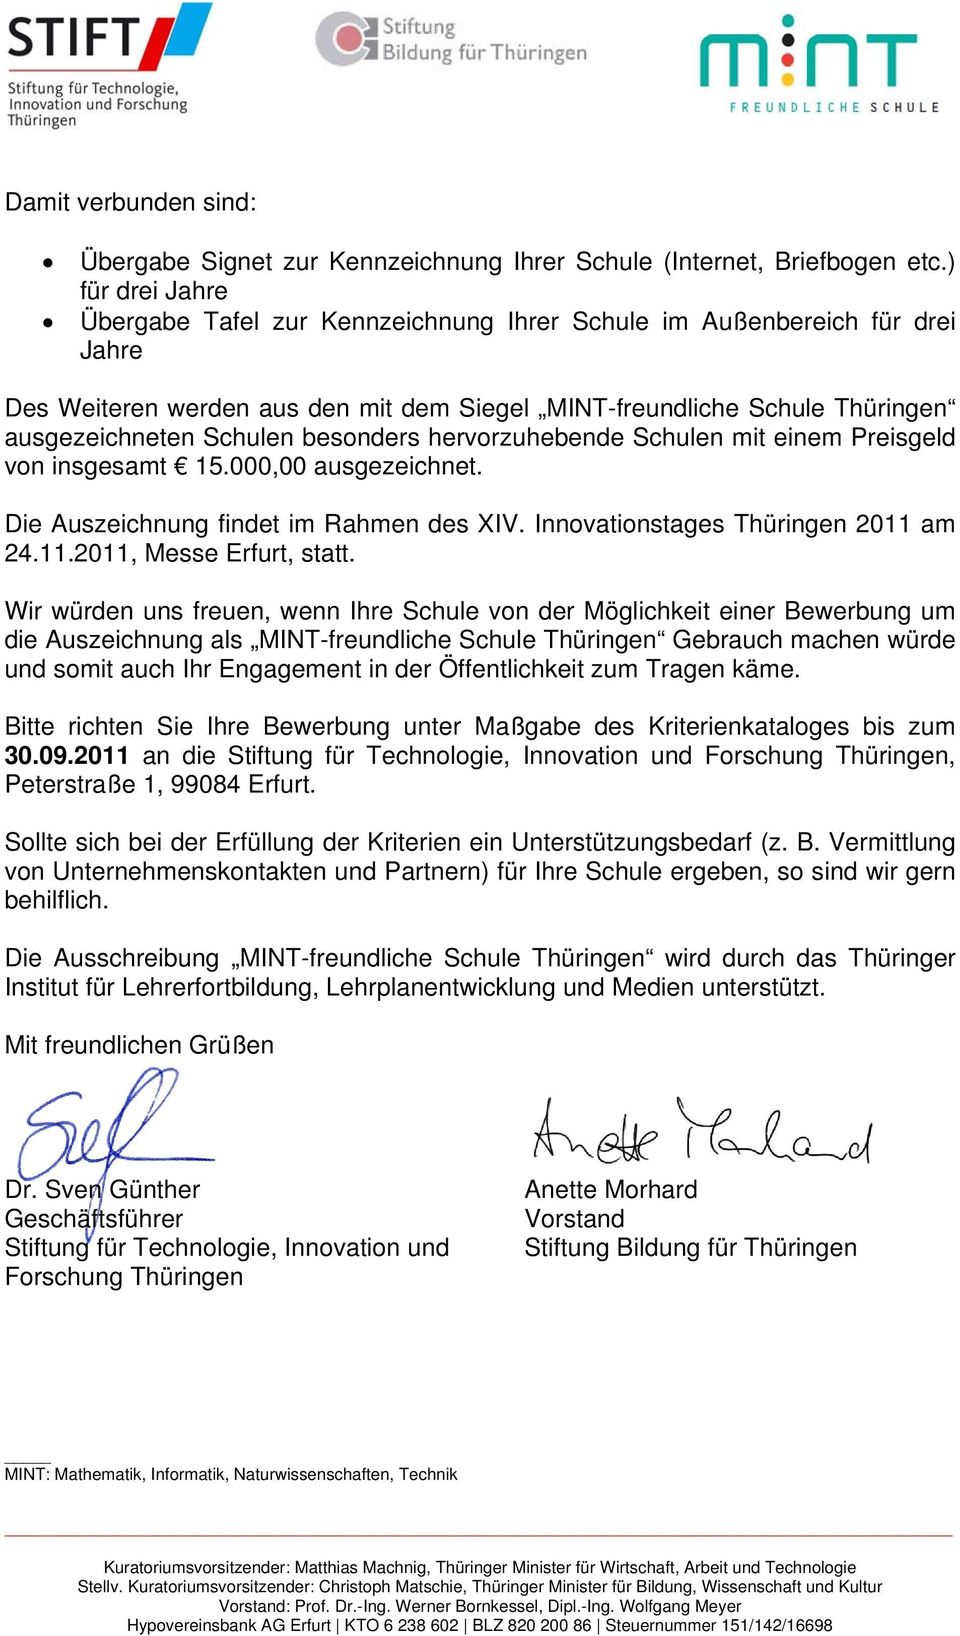 besonders hervorzuhebende Schulen mit einem Preisgeld von insgesamt 15.000,00 ausgezeichnet. Die Auszeichnung findet im Rahmen des XIV. Innovationstages Thüringen 2011 am 24.11.2011, Messe Erfurt, statt.